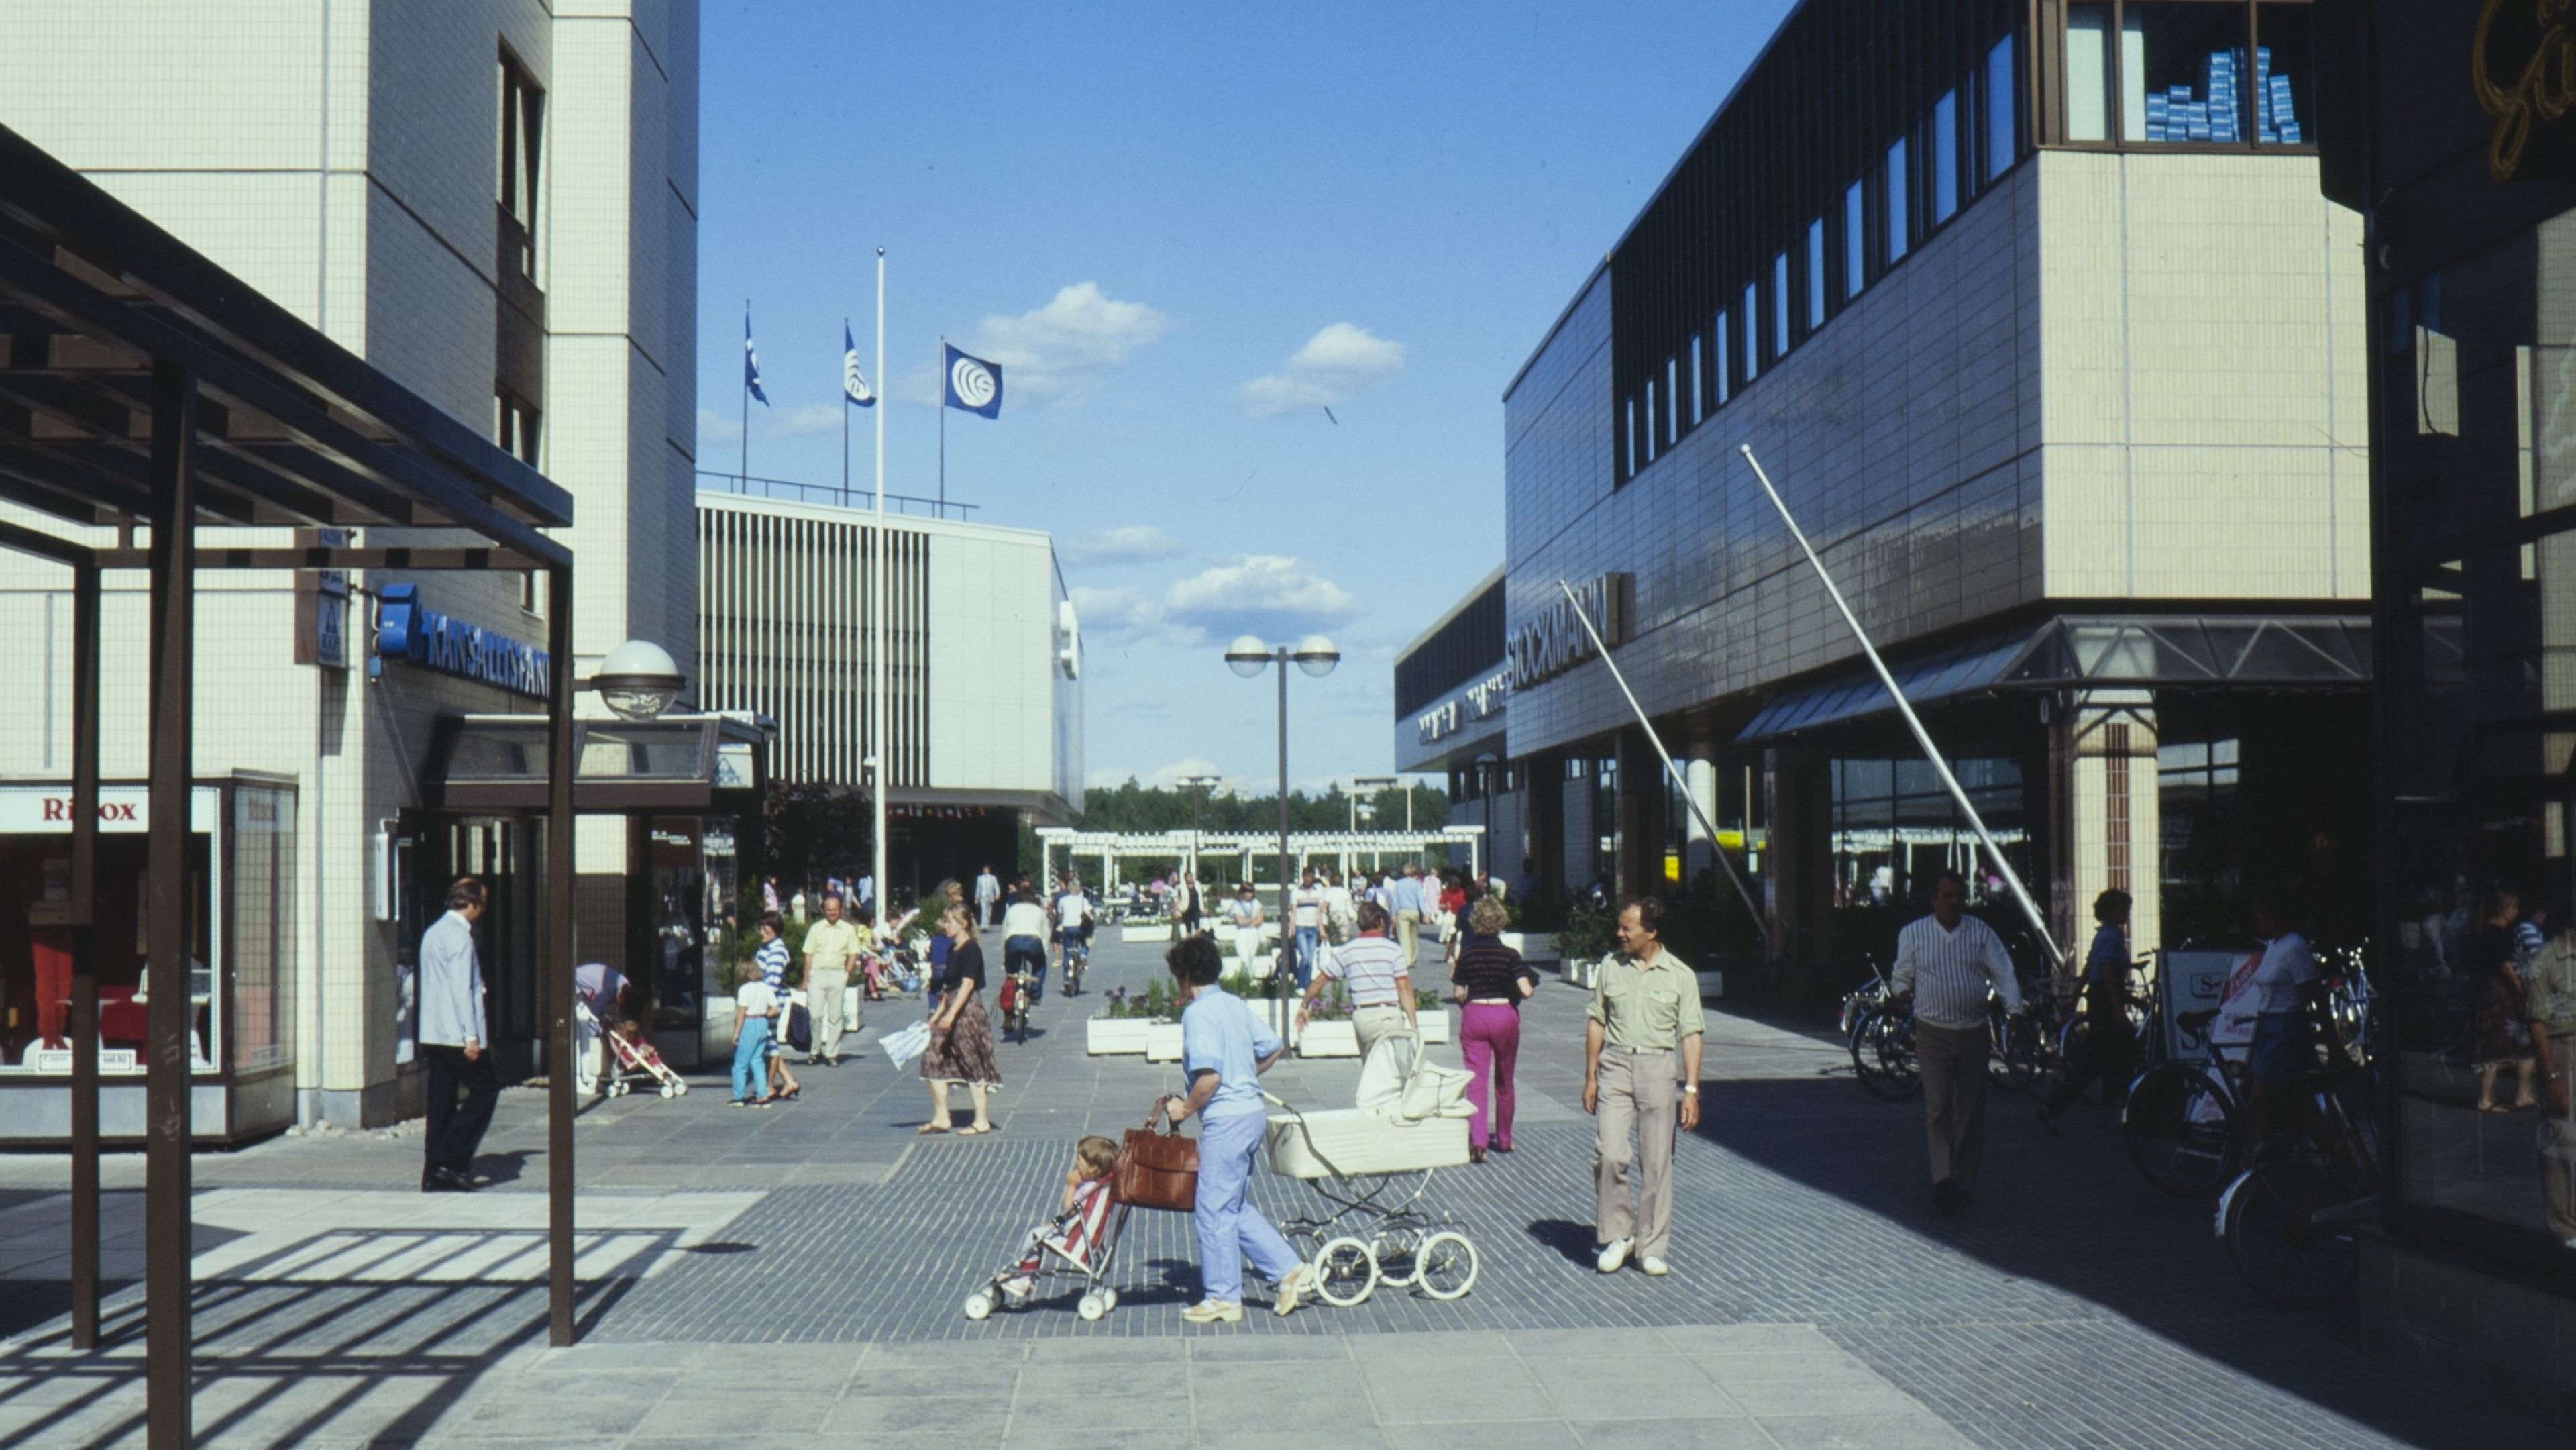 Ihmisiä lastenvaunujen kanssa Tapiolan keskustassa.